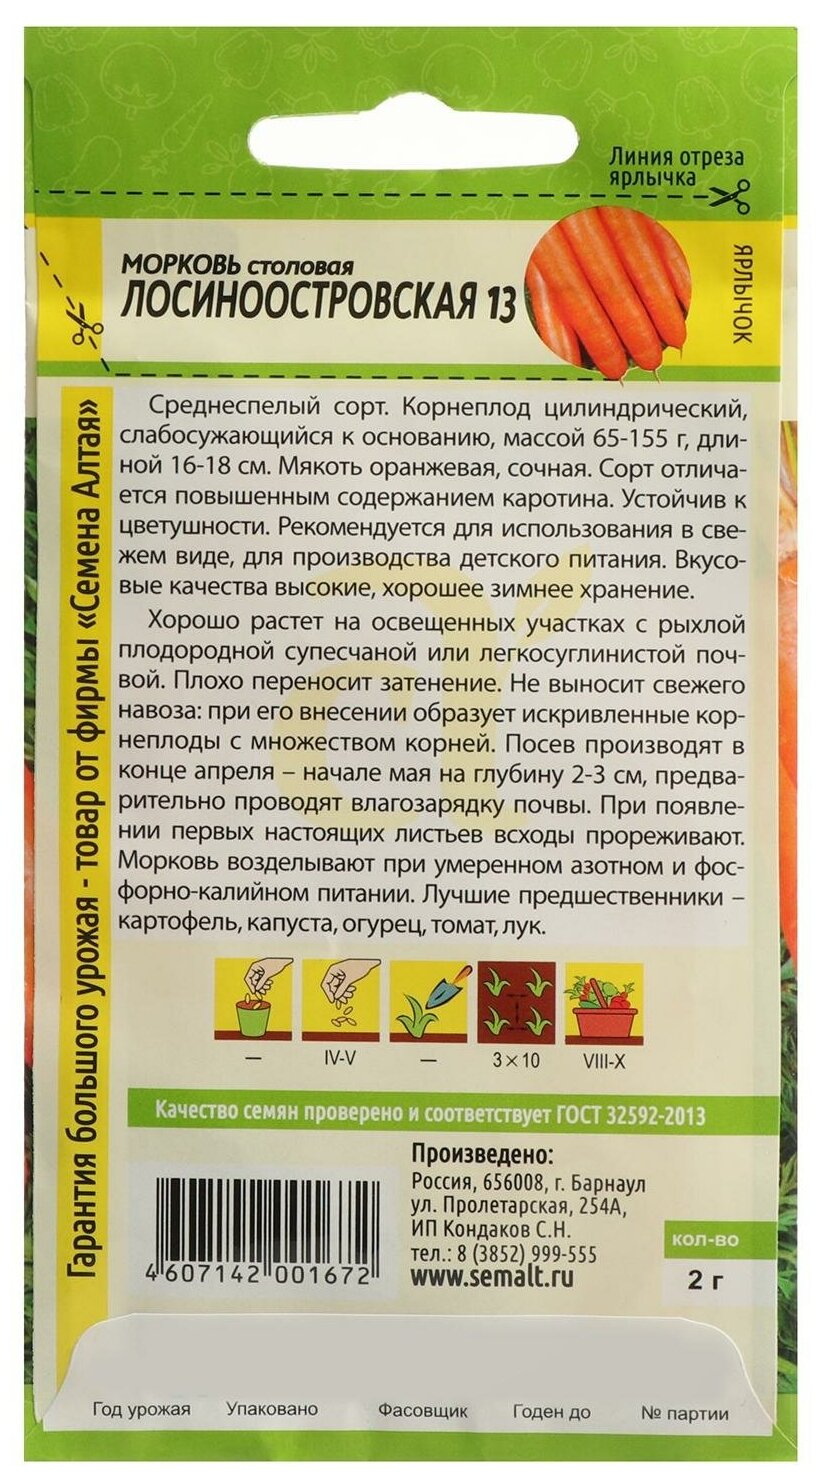 Семена Морковь "Лосиноостровская 13", Сем. Алт, ц/п, 2 г